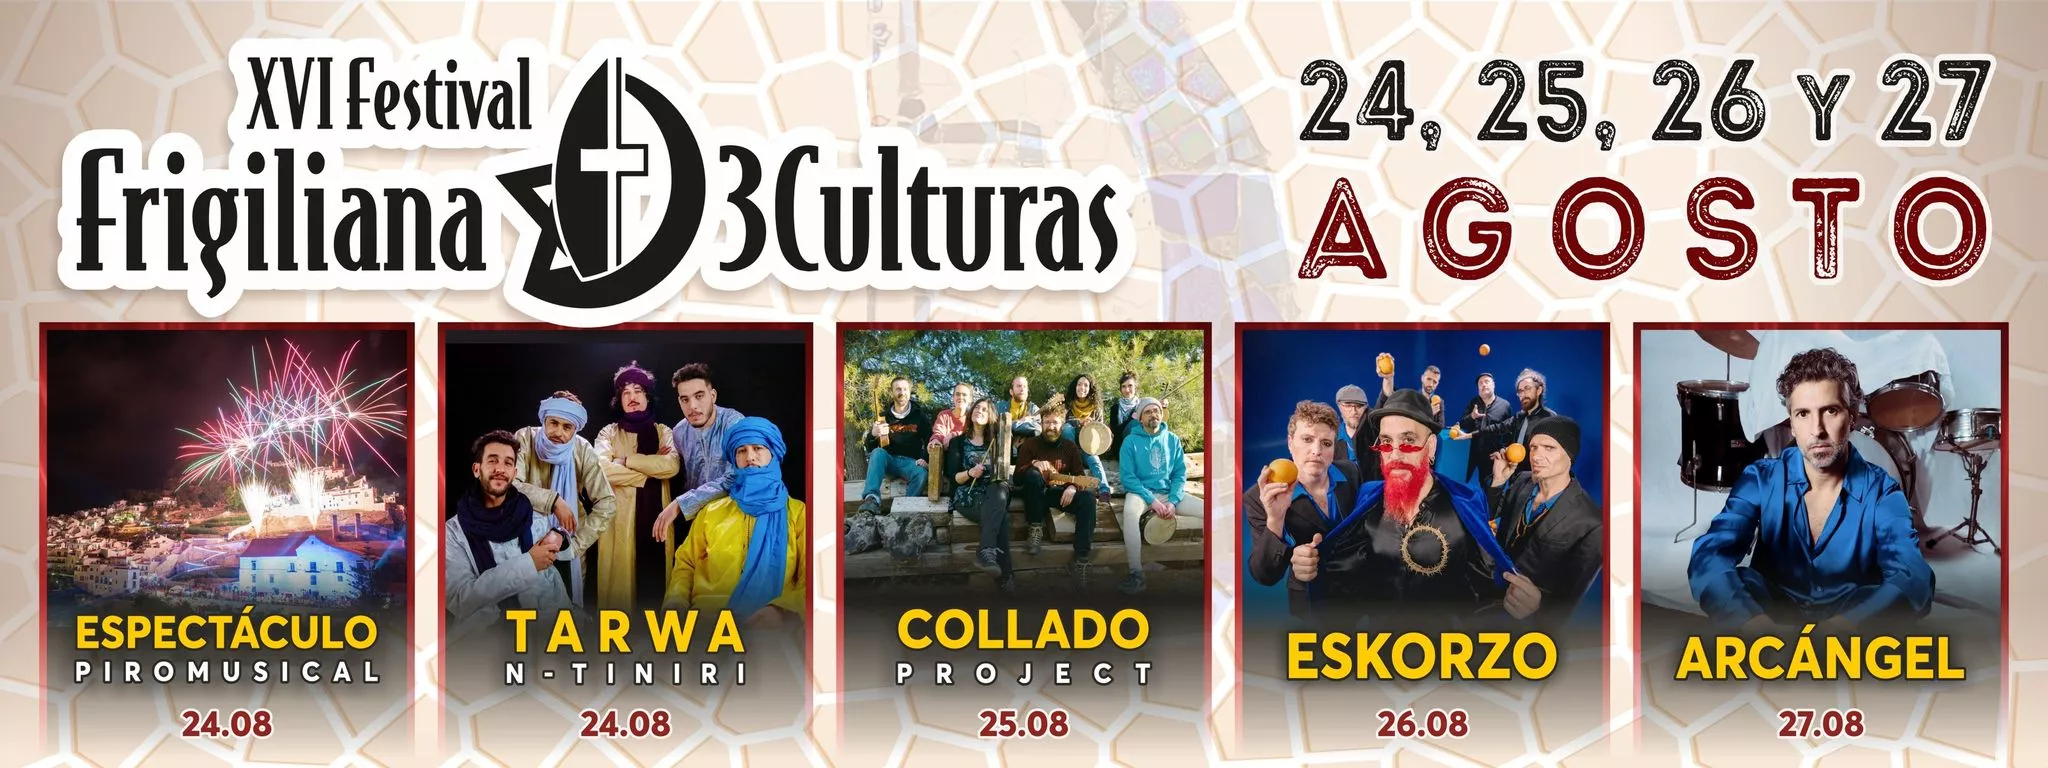 frigiliana-festival-three-cultures-concerts-conciertos